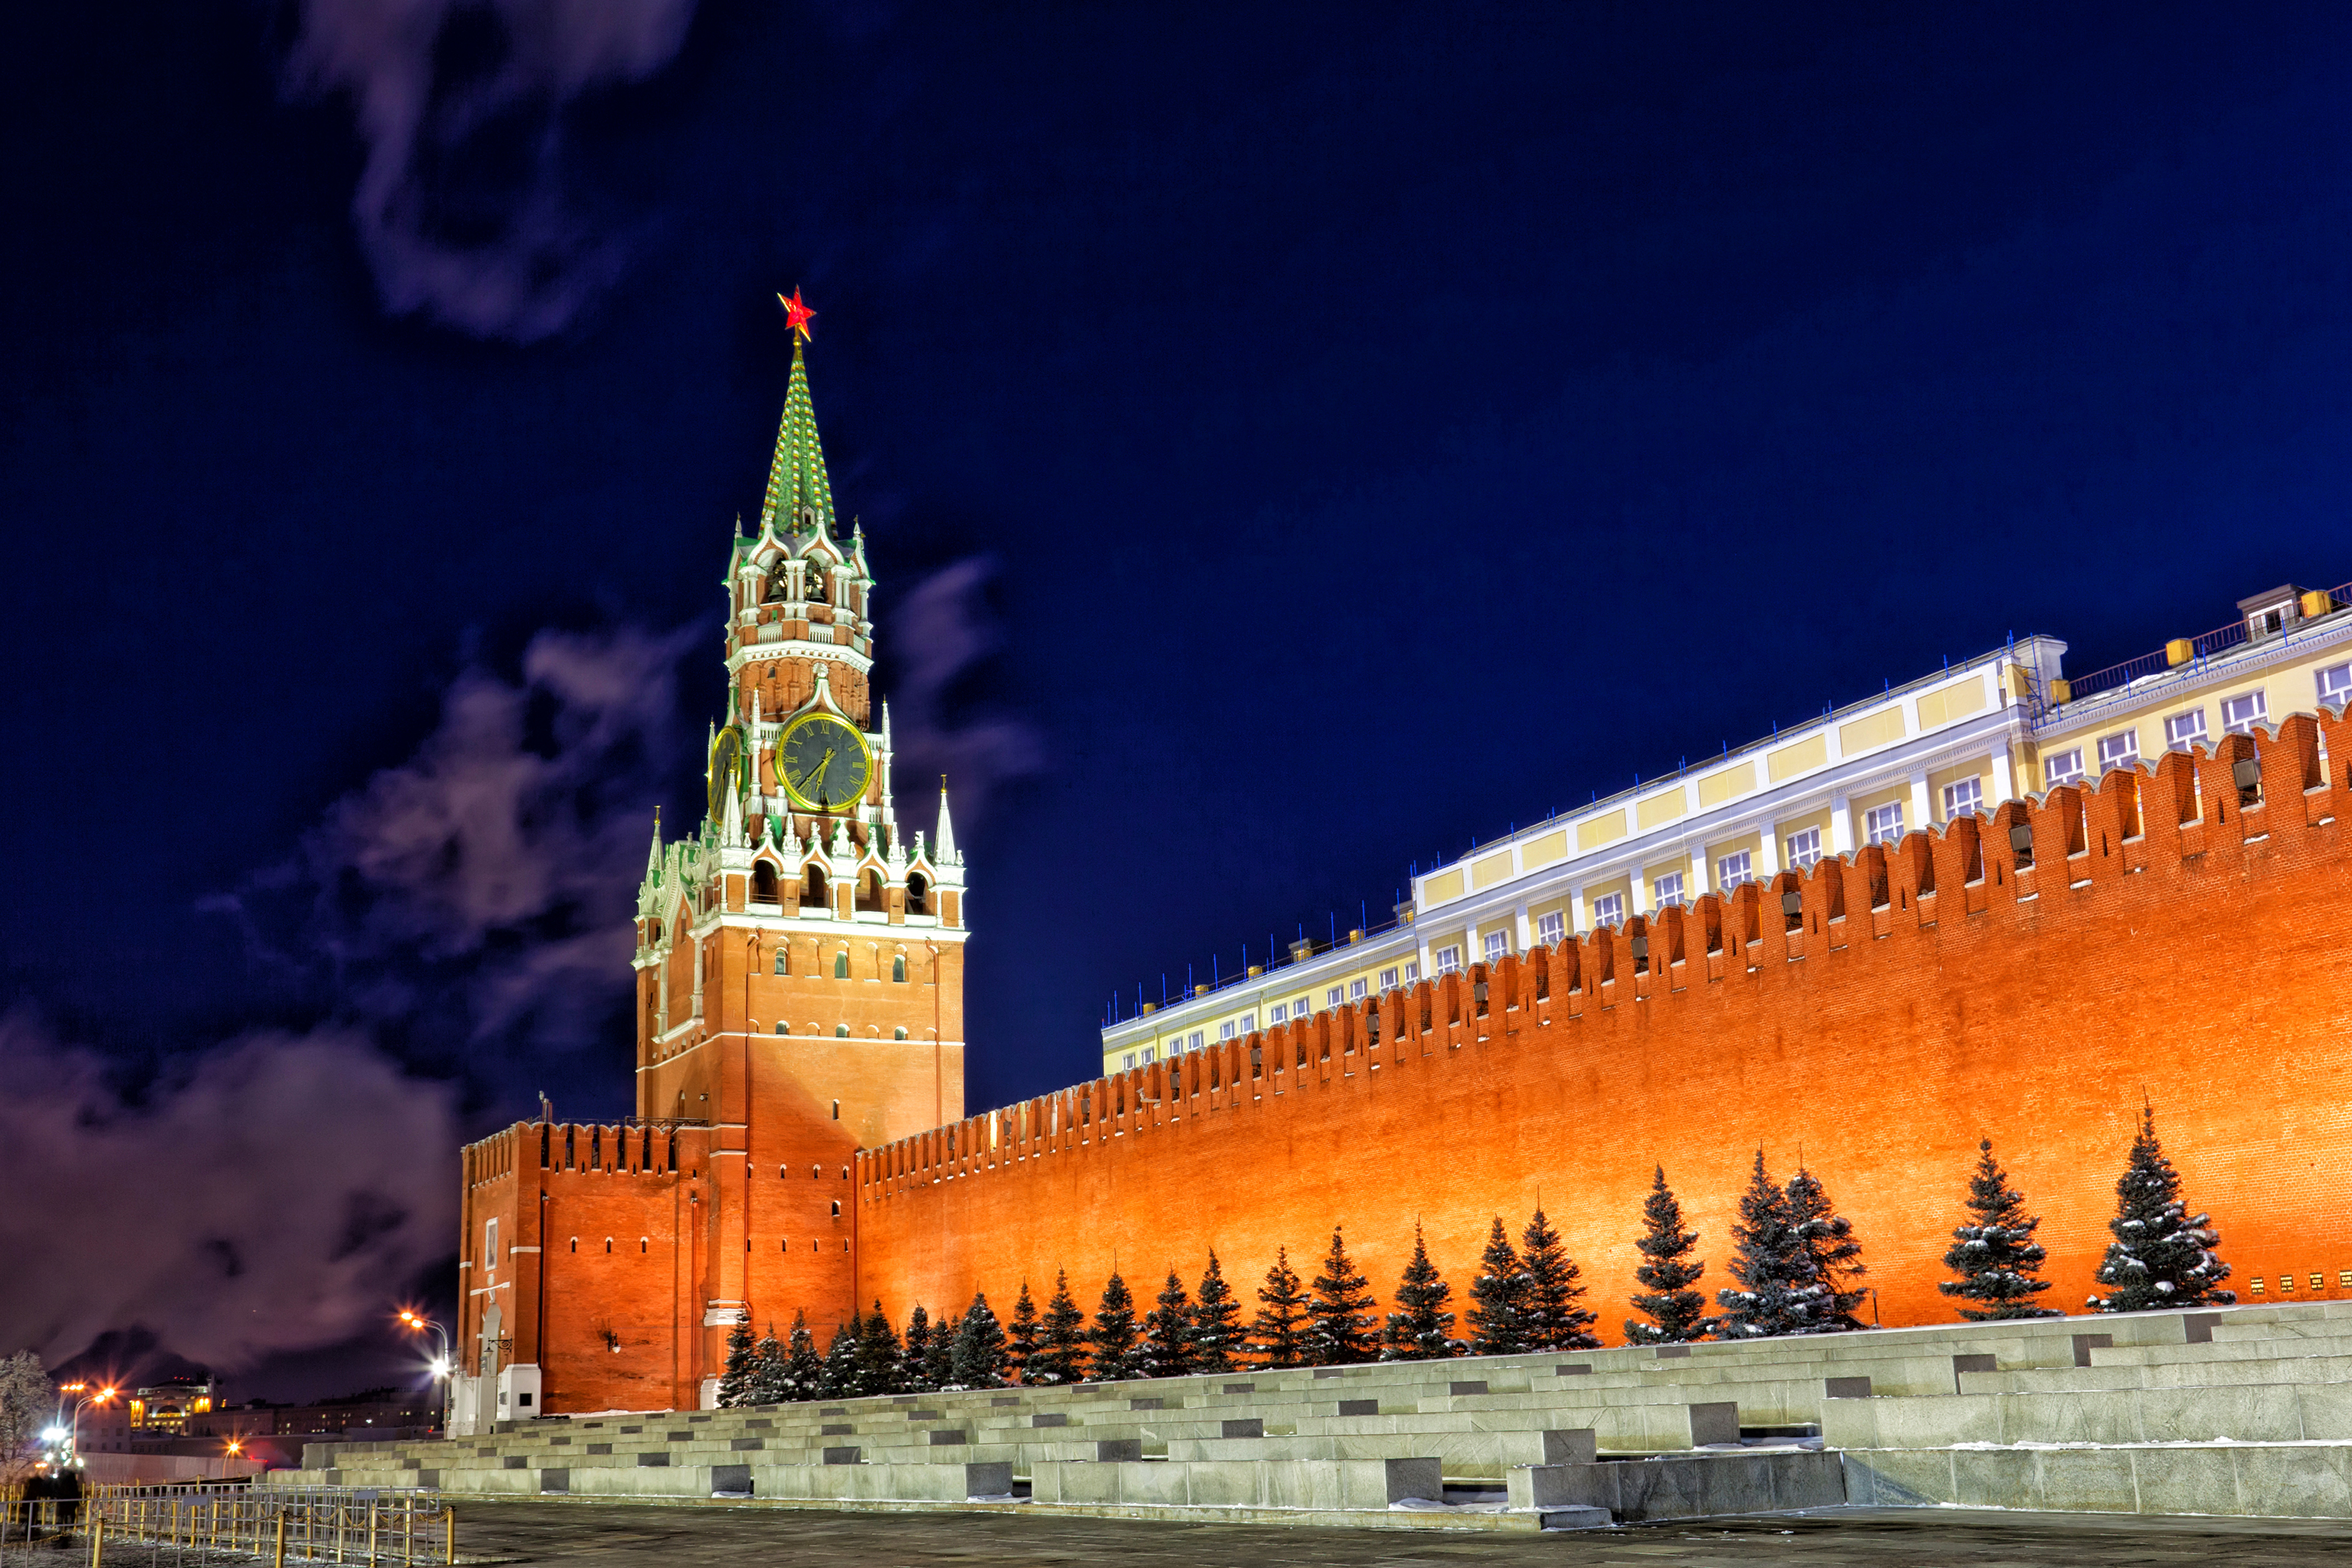 интересные факты о башнях московского кремля